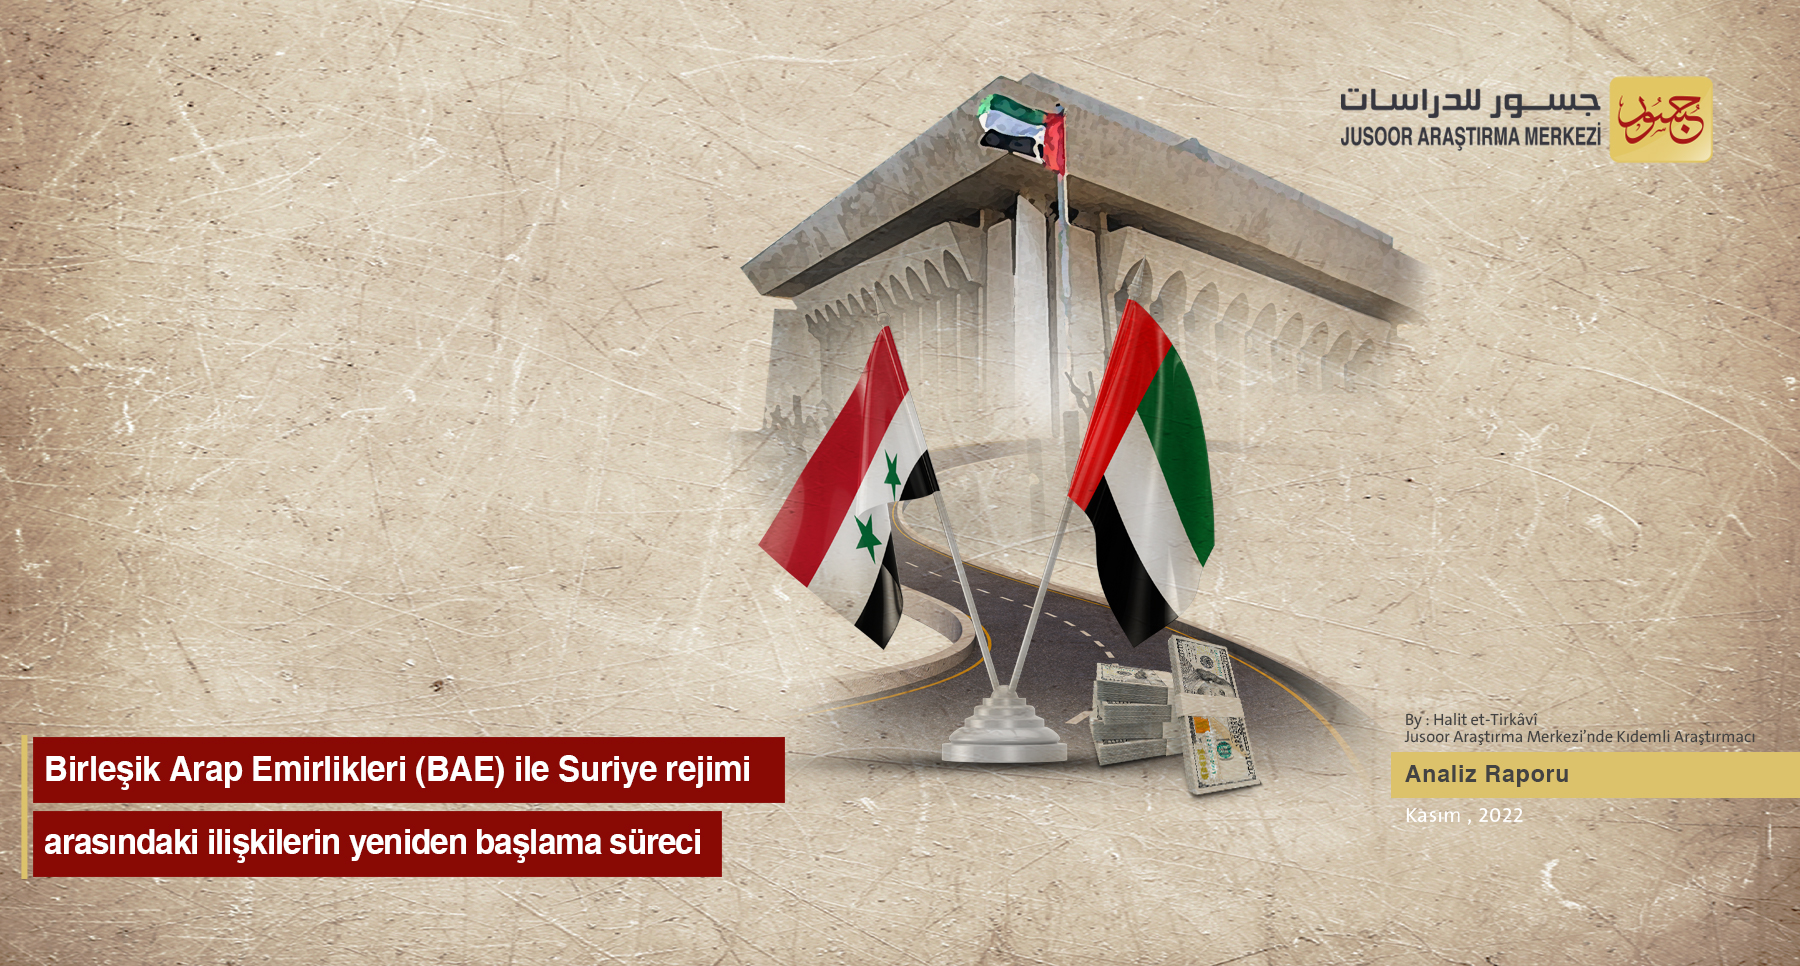 Birleşik Arap Emirlikleri (BAE) ile Suriye rejimi arasındaki ilişkilerin yeniden başlama süreci